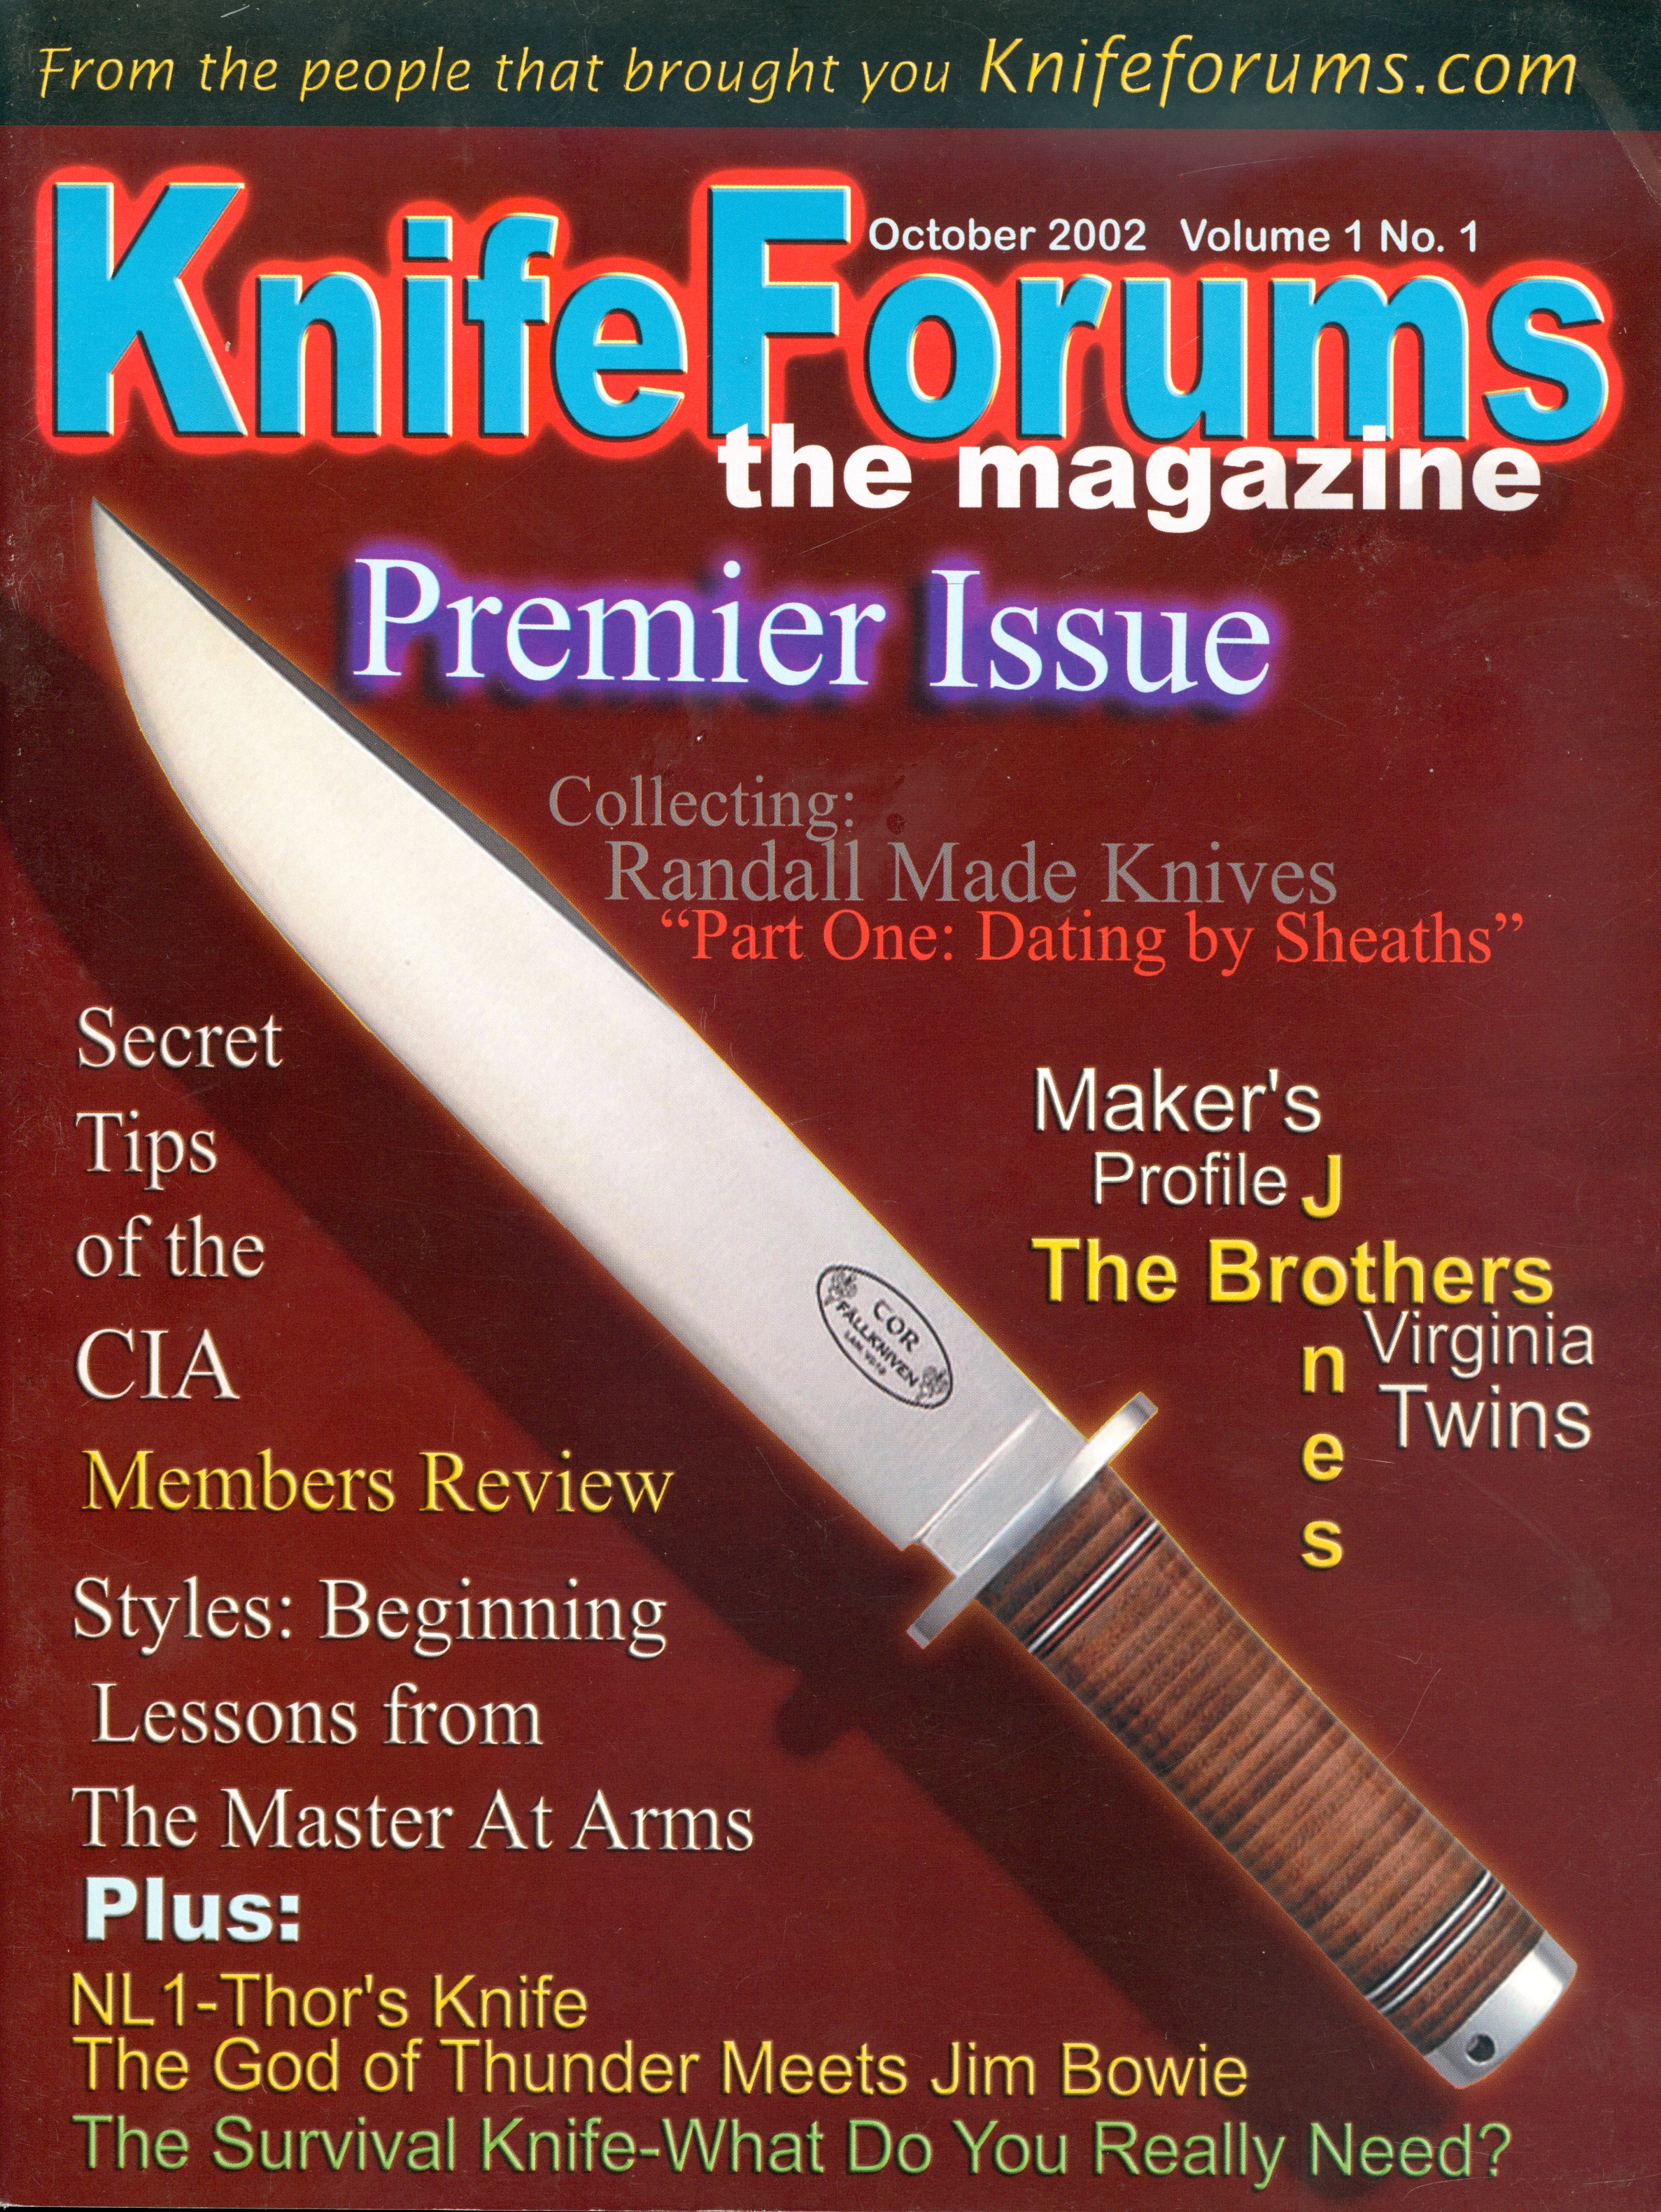 Randall Made Knives » Sheaths